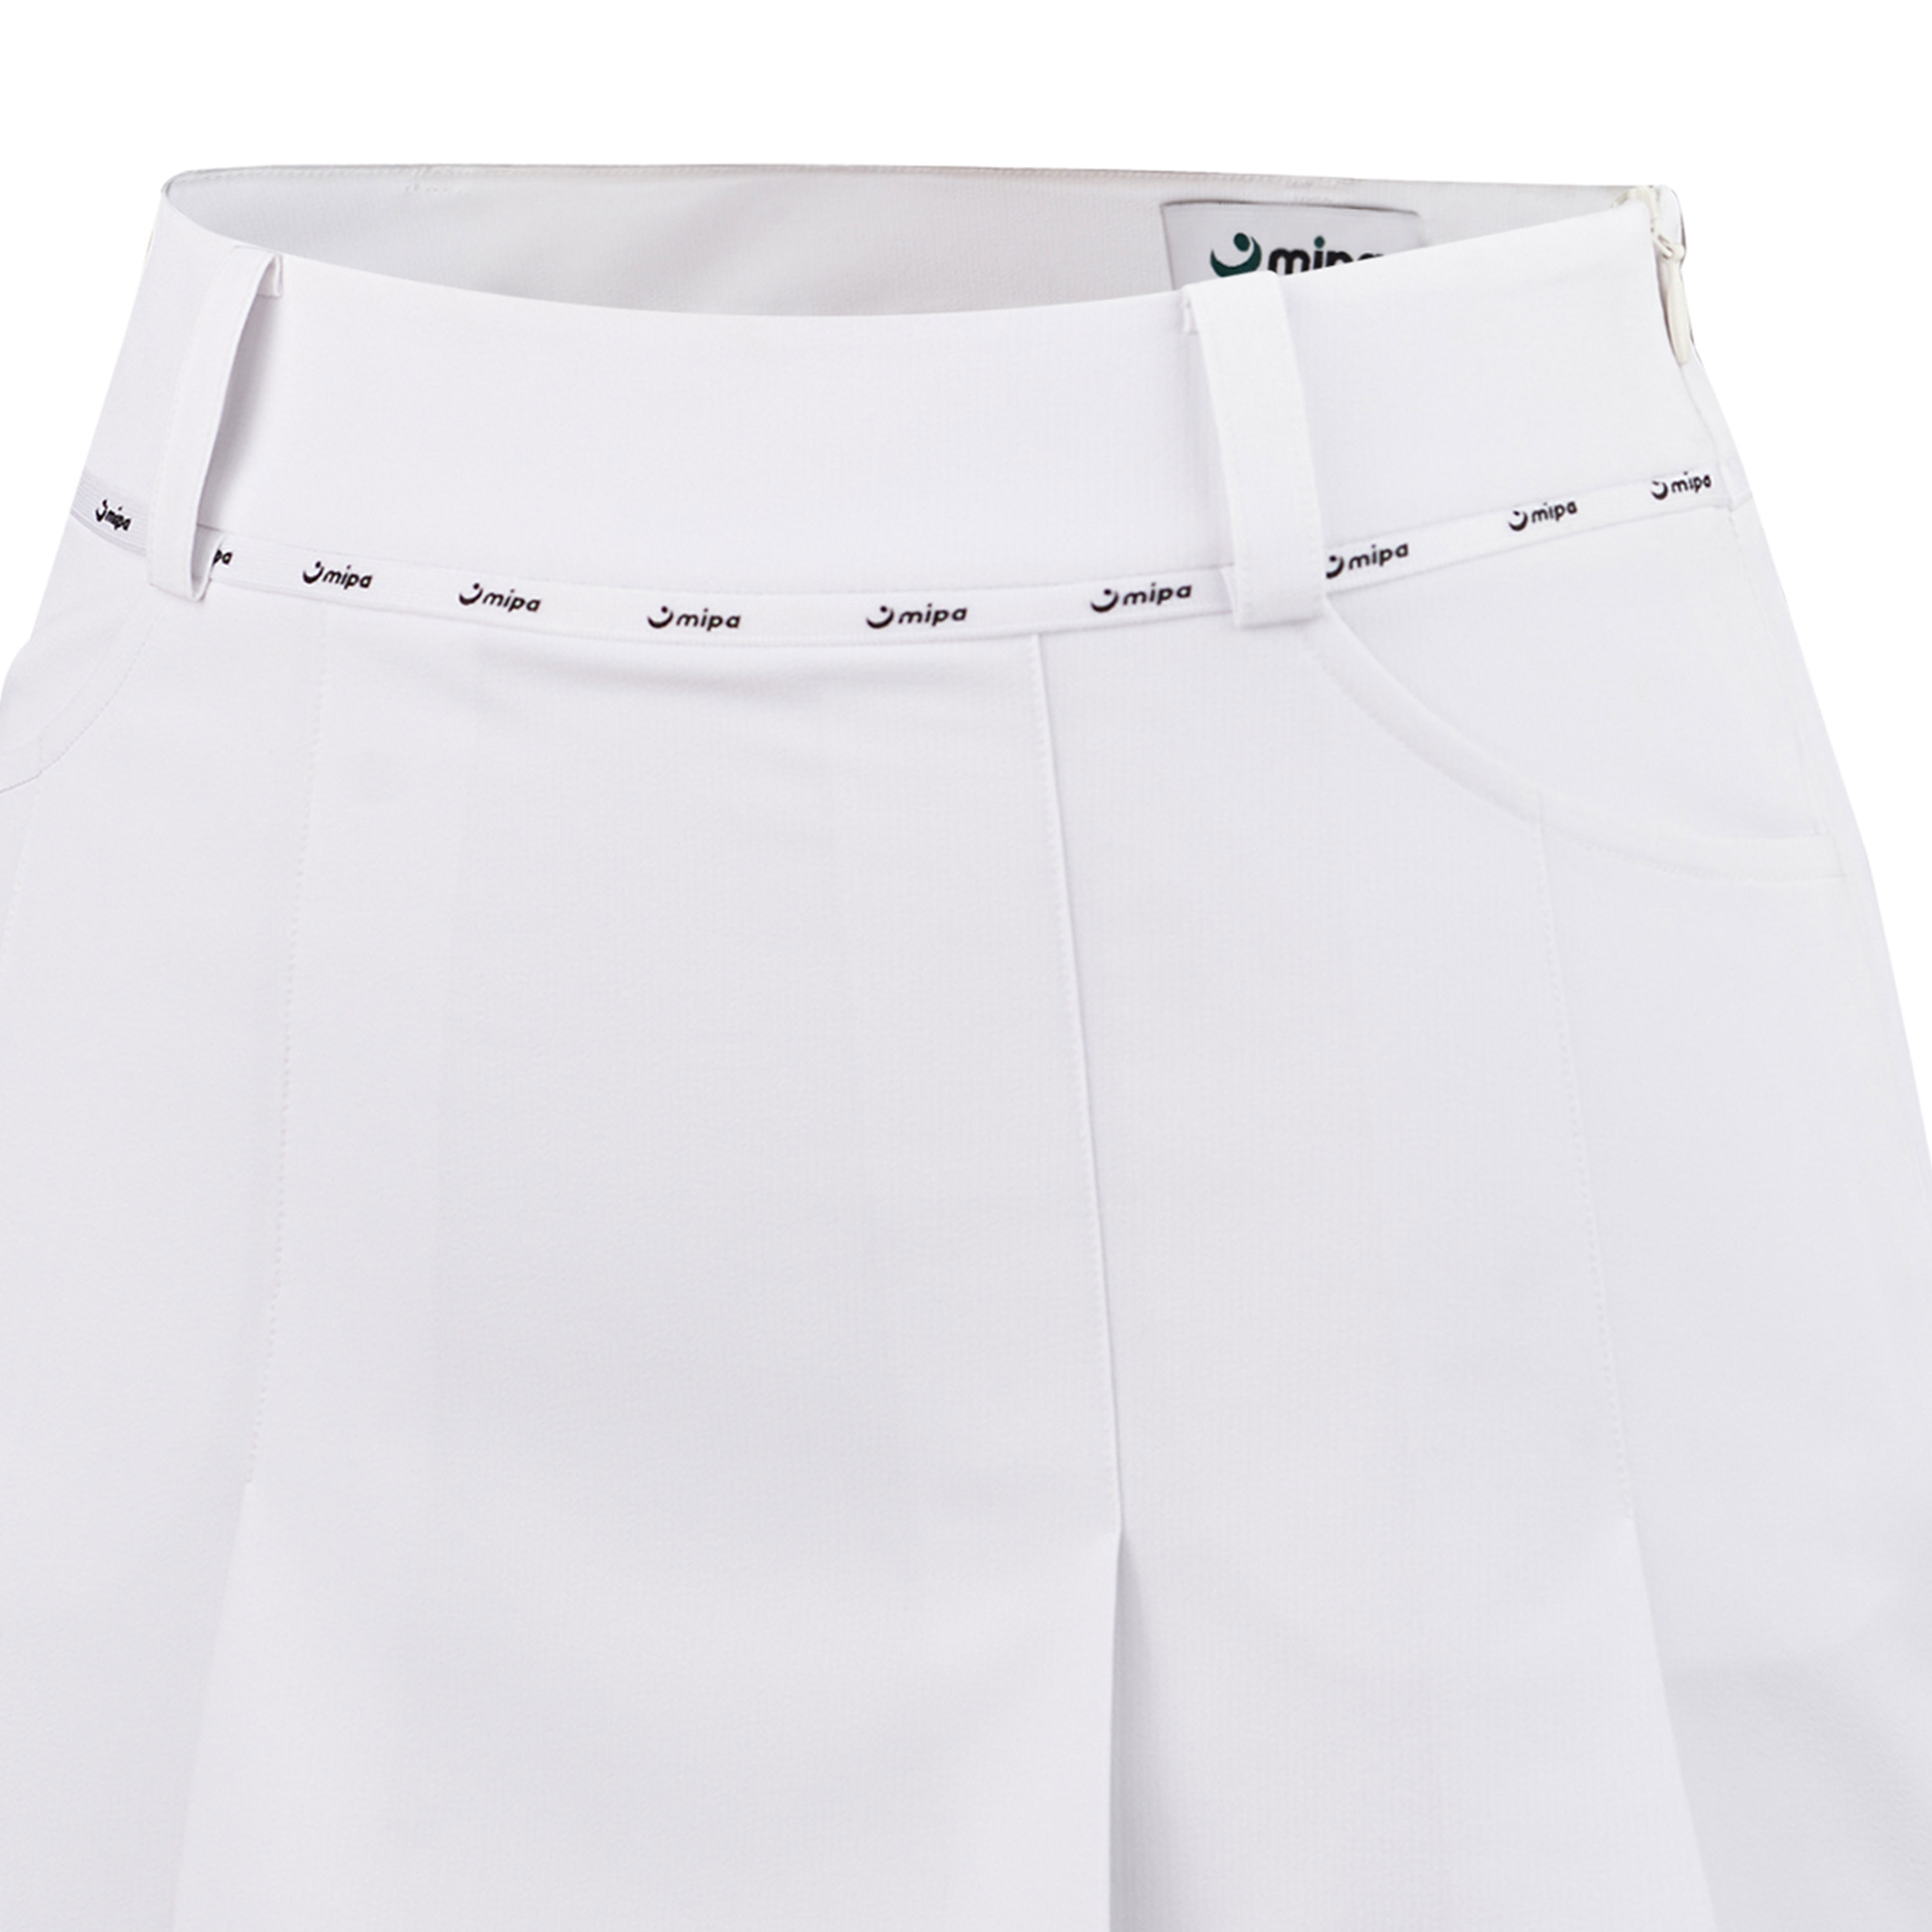 White Serena Skirt